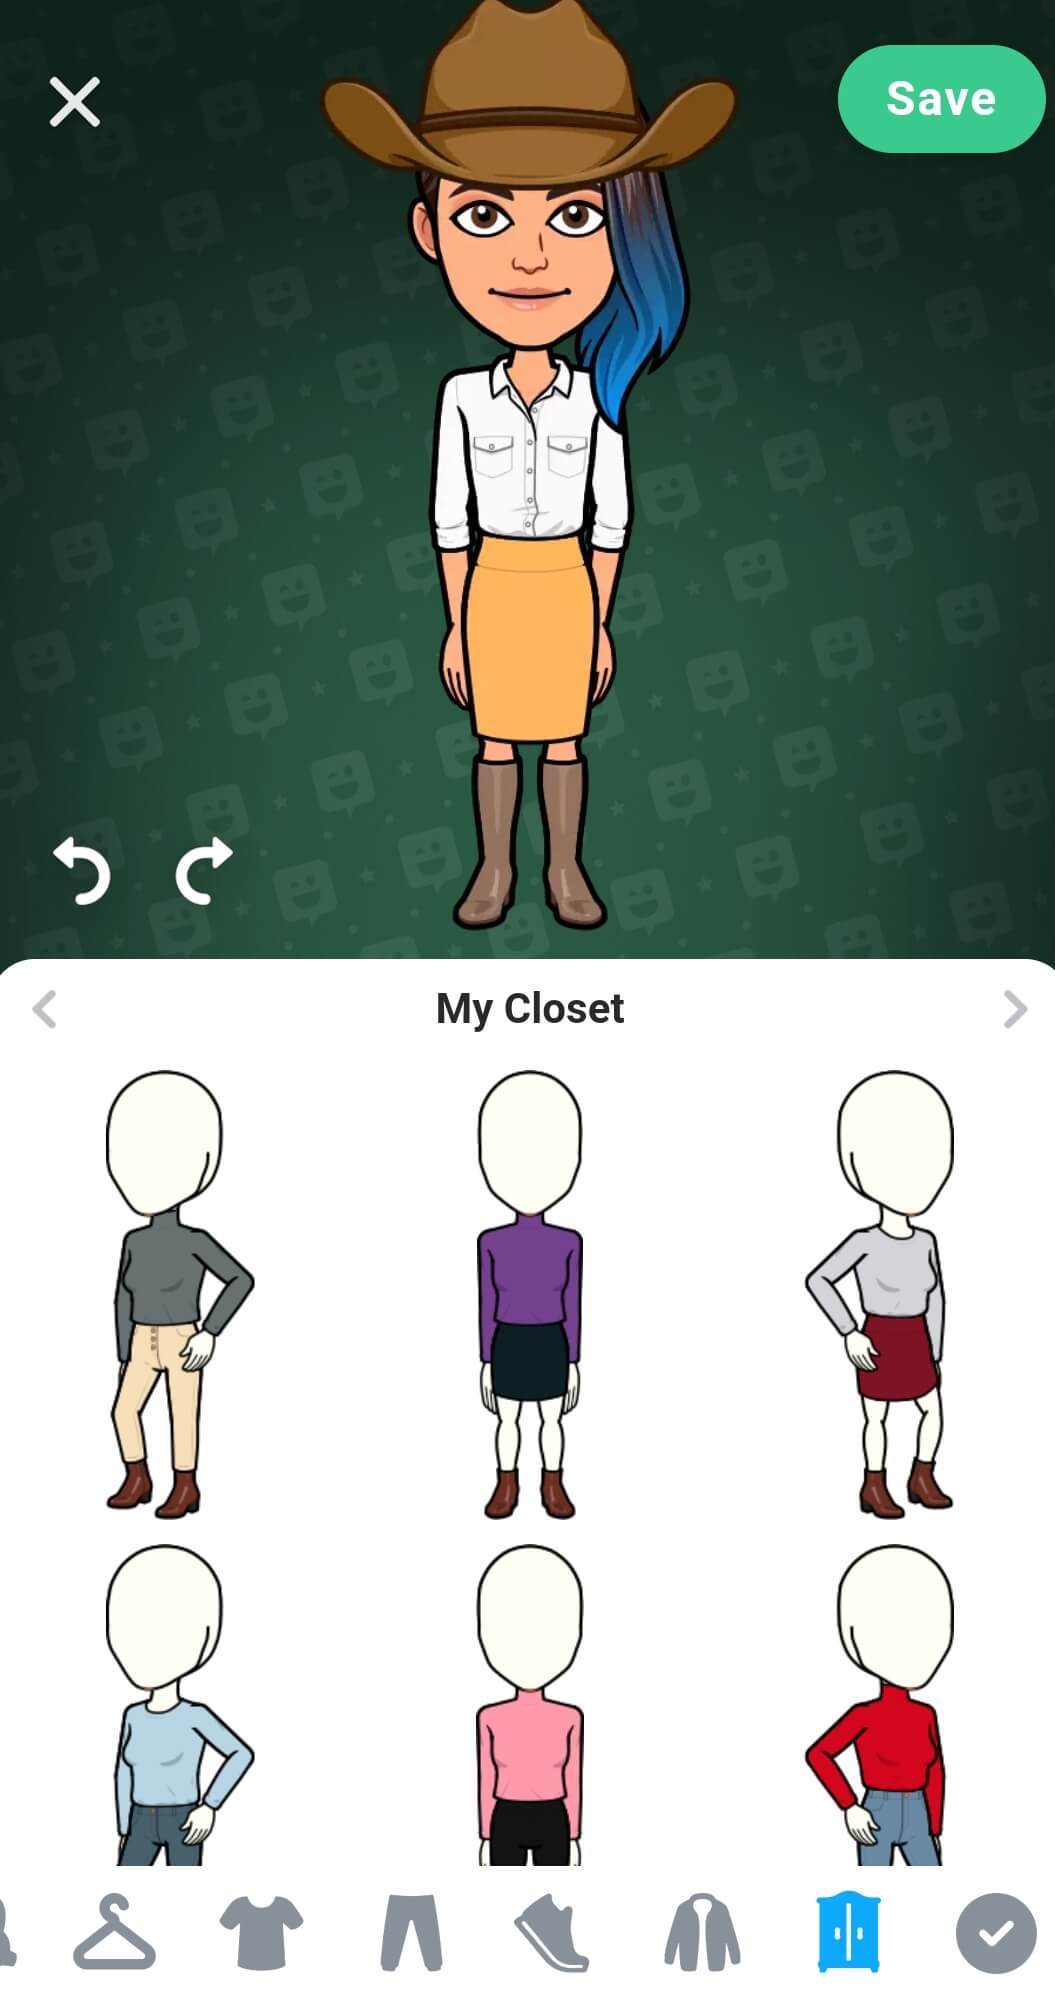 Une variété de tenues sont enregistrées dans le placard des avatars dans la moitié inférieure de l'écran. Le bouton de sauvegarde se trouve sur le coin supérieur droit.